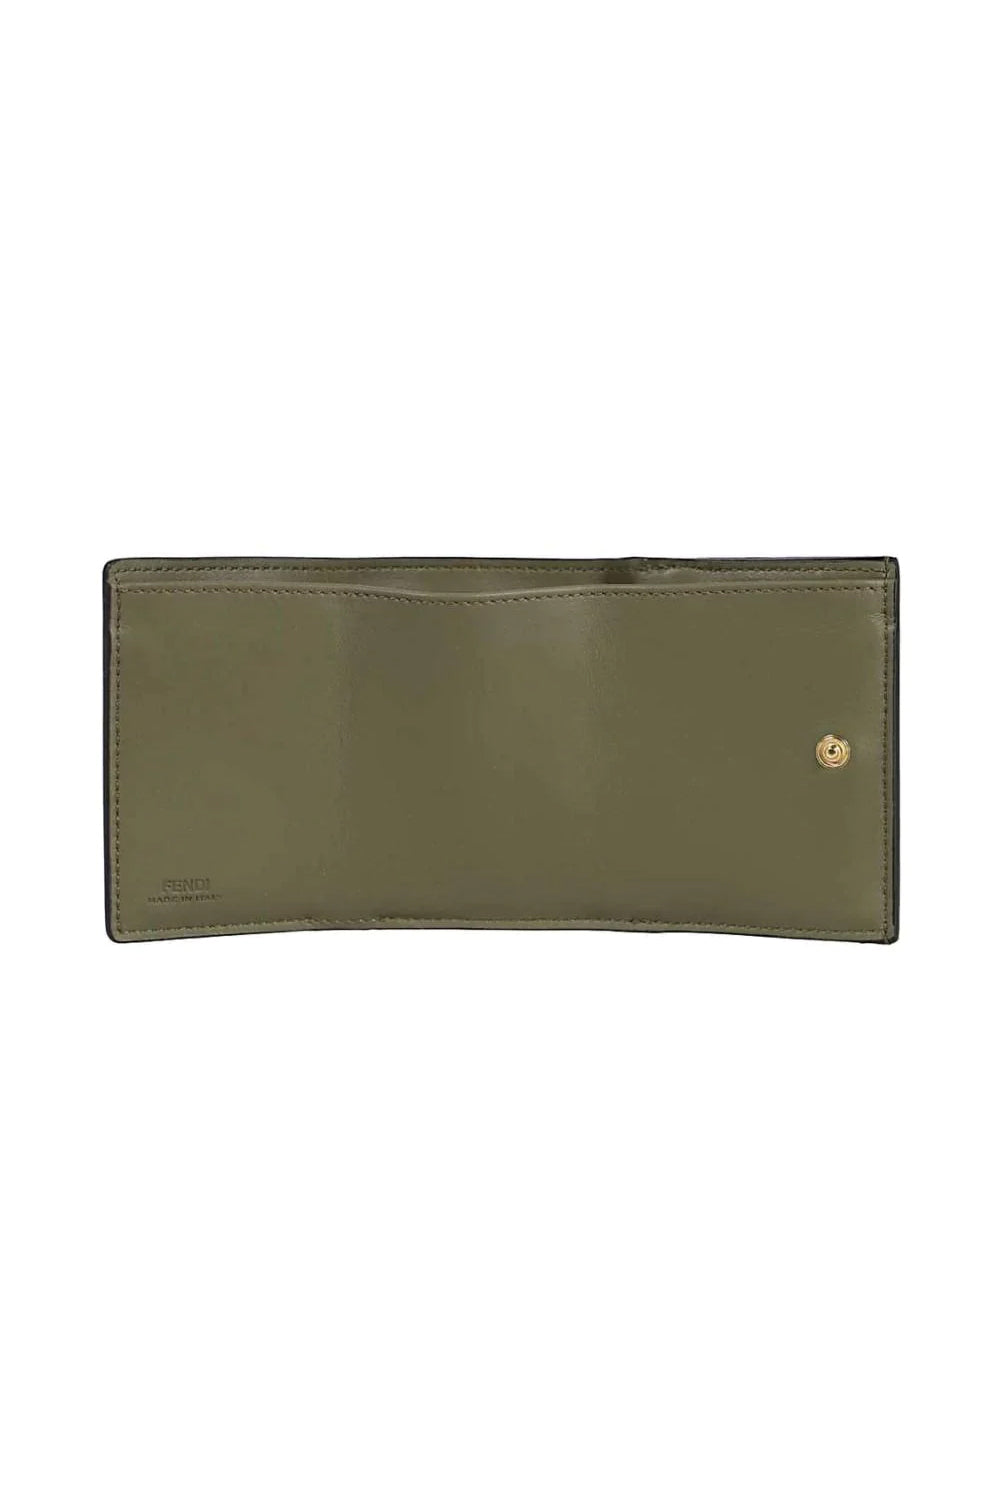 Fendi Selleria Leather Avocado Micro Trifold Wallet